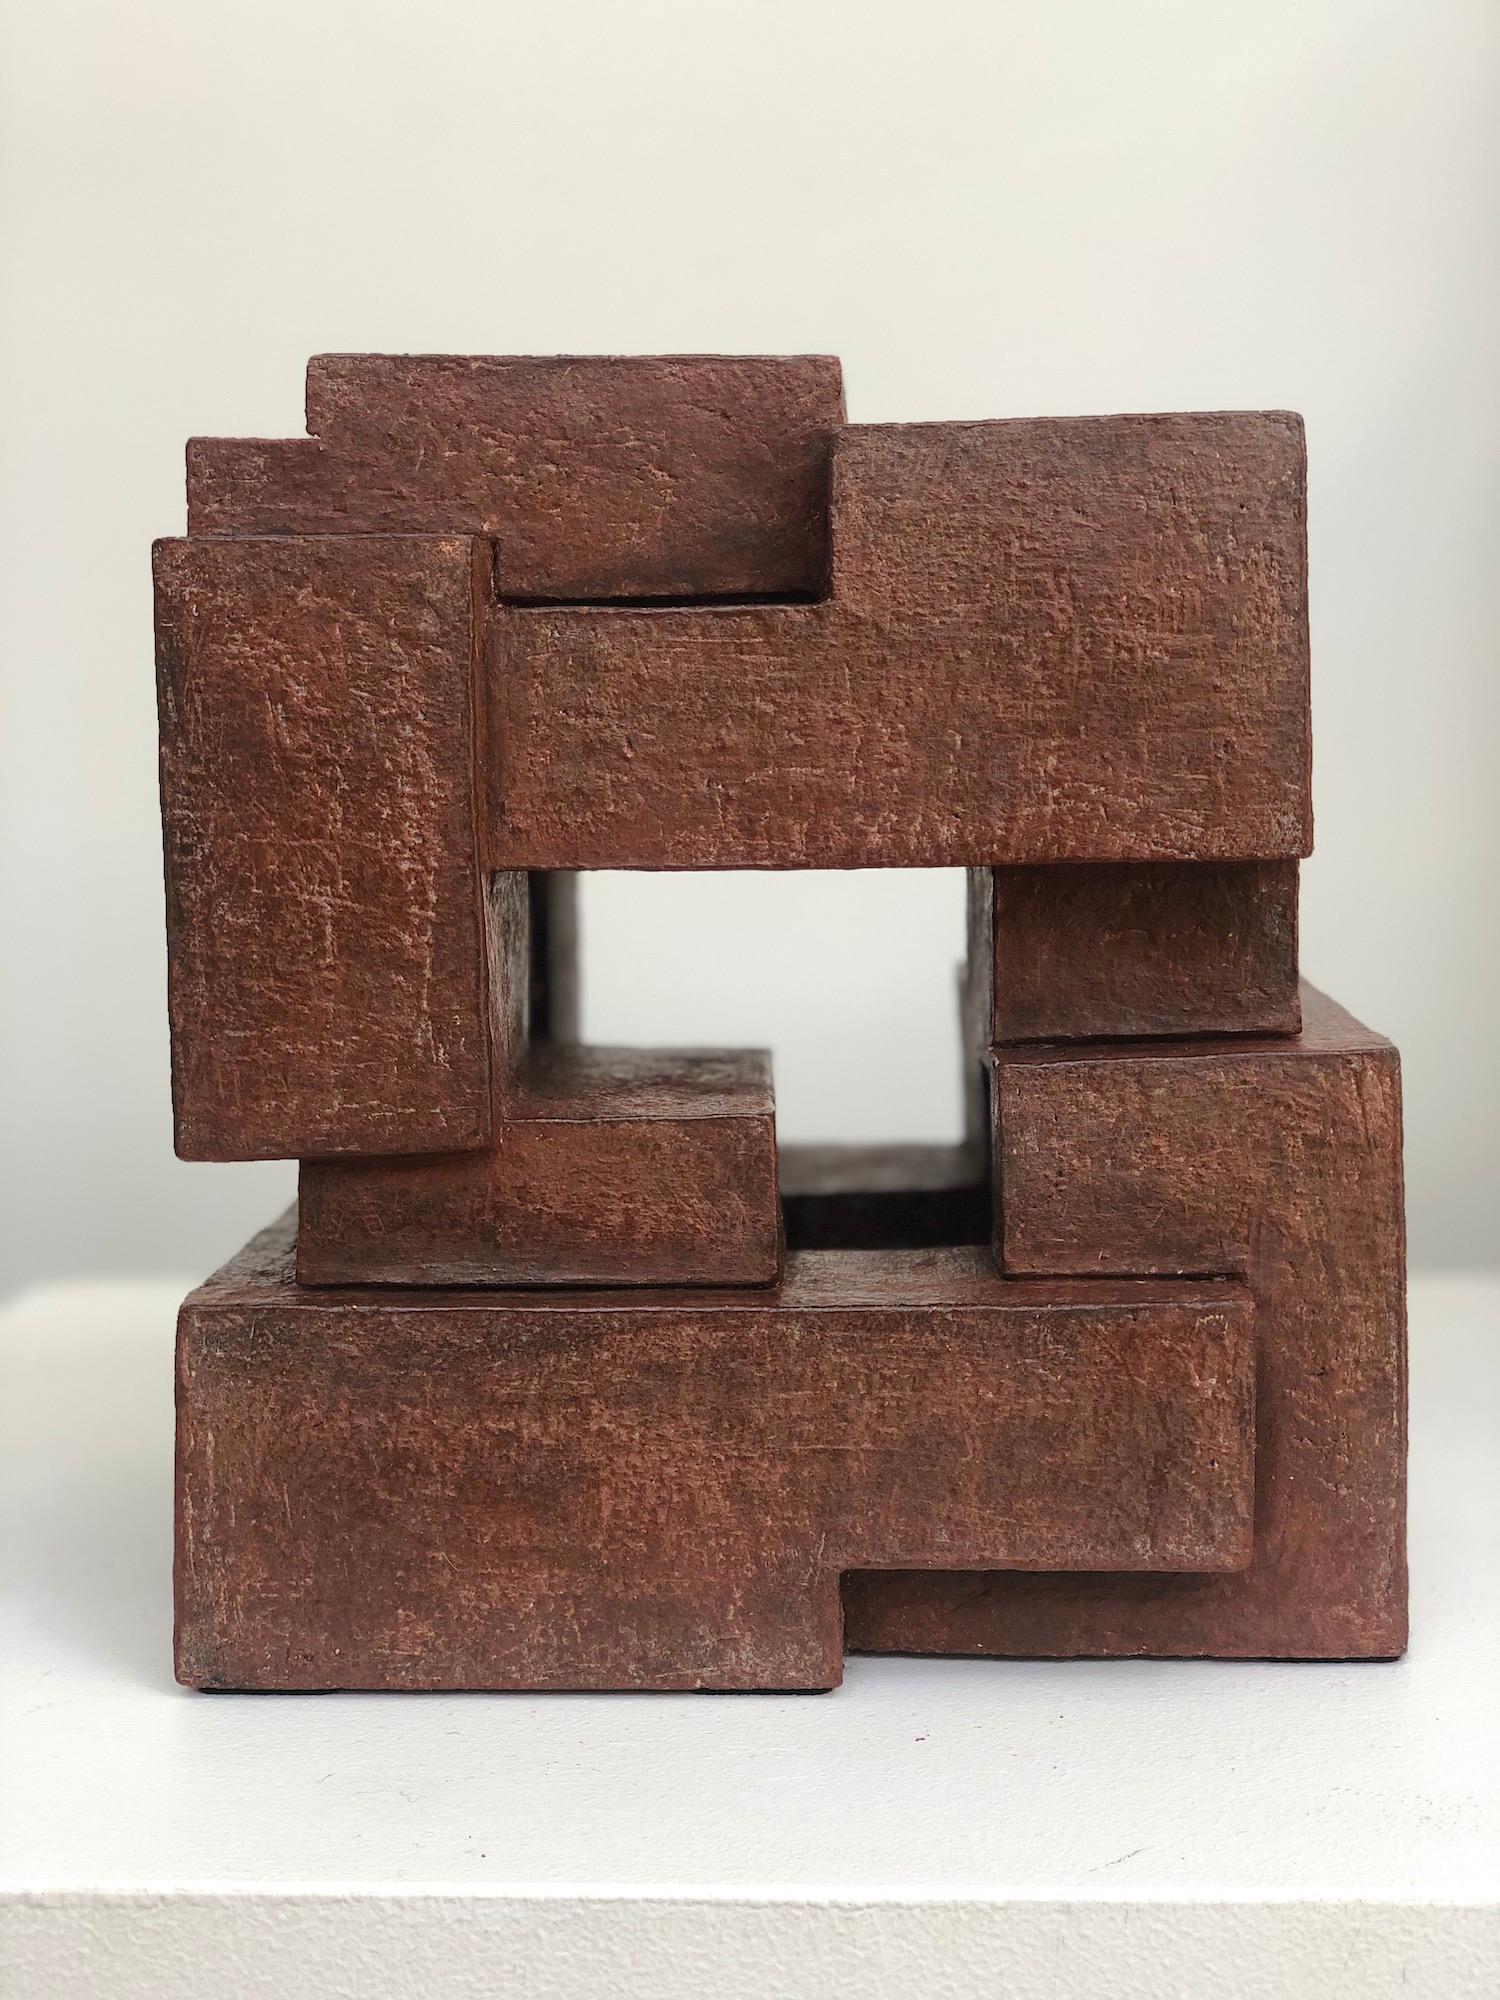 Block VIII est une sculpture unique en terre cuite de l'artiste contemporaine Delphine Brabant, dont les dimensions sont de 23 cm × 20 cm × 16 cm (9.1 × 7.9 × 6.3 in). La sculpture est signée et accompagnée d'un certificat d'authenticité.

En